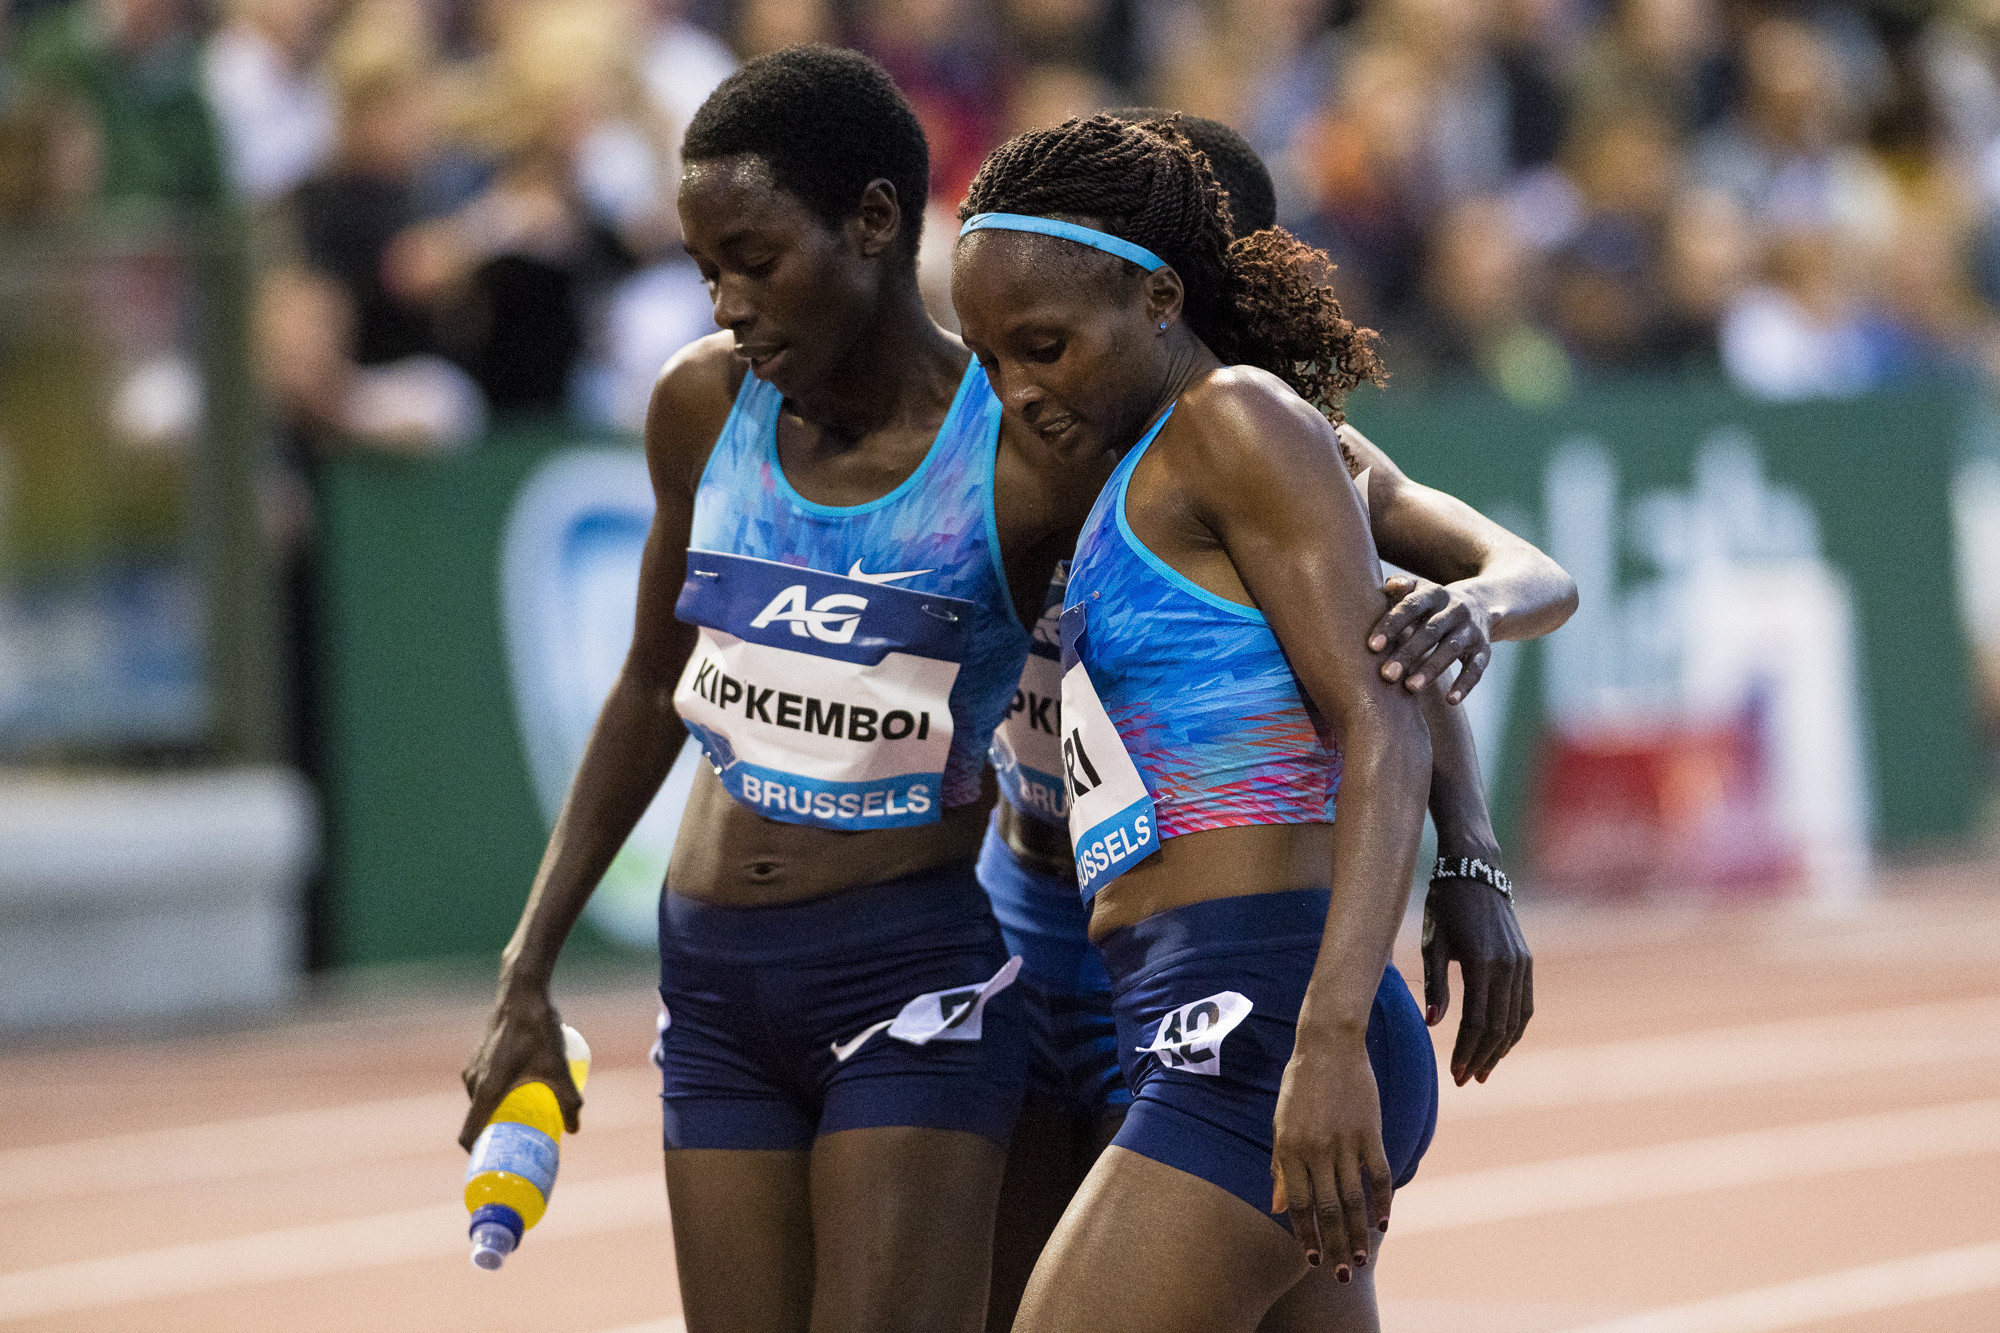 Margaret Chelimo Kipkemboi, left, won the women's race ©Getty Images